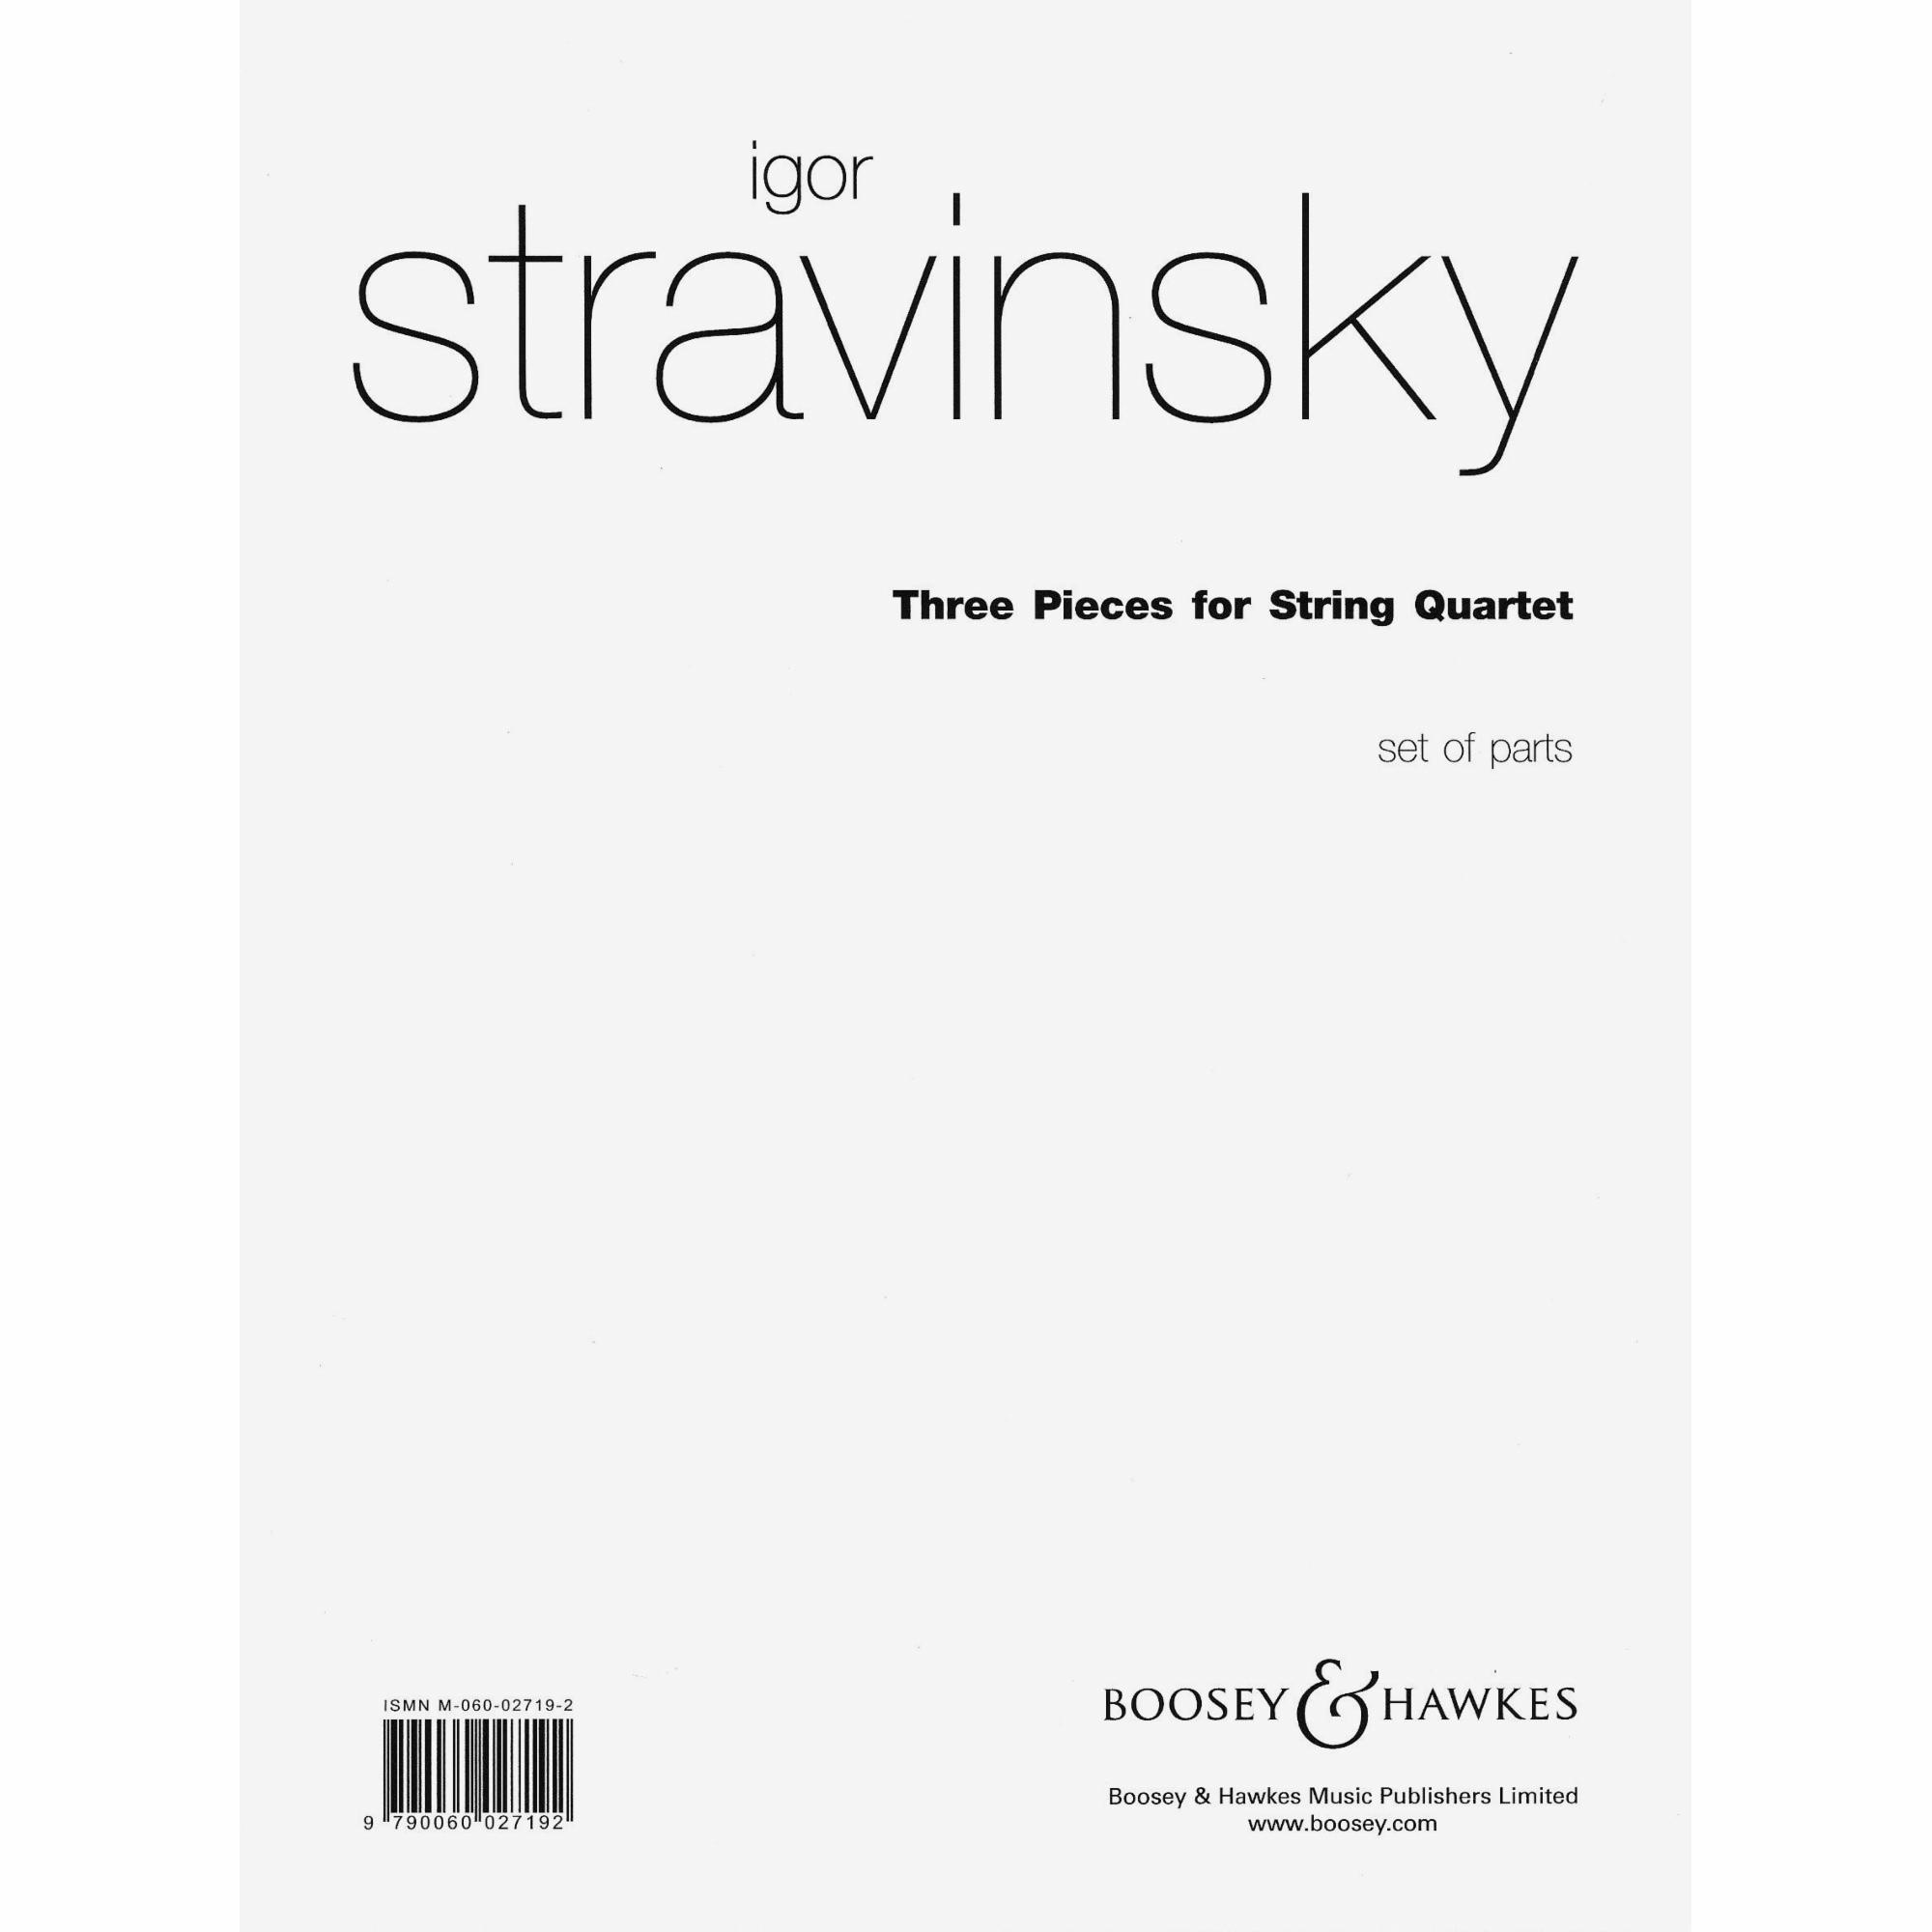 Stravinsky -- Three Pieces for String Quartet